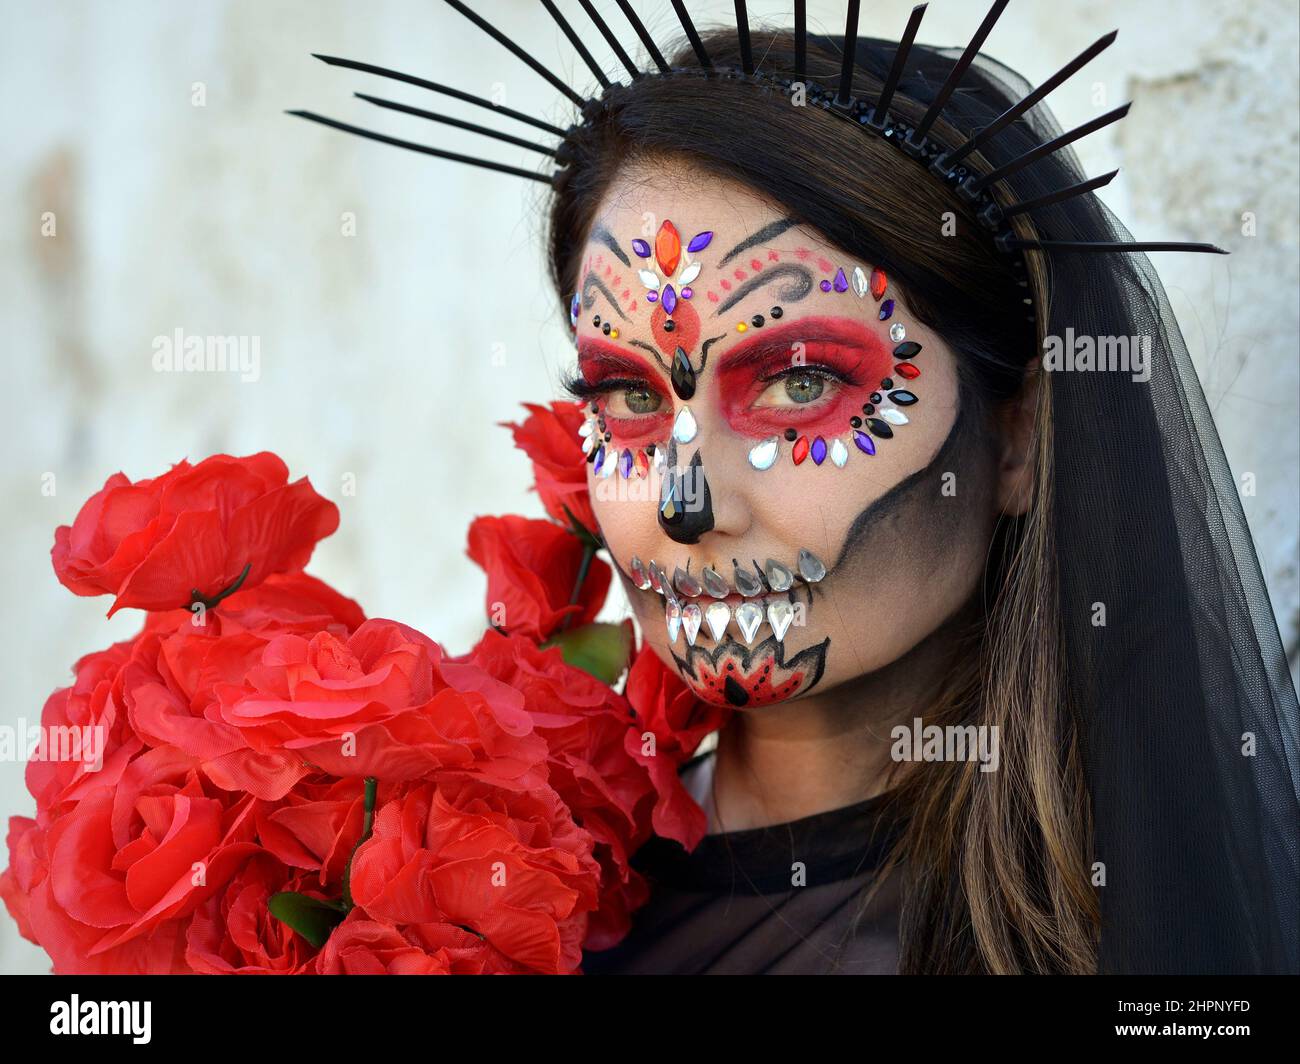 Junge schöne kaukasische Frau mit gruseliger traditioneller Gesichtsbemalung und Gesichtsbemalungen am mexikanischen Tag der Toten (Día de los Muertos) schaut den Betrachter an. Stockfoto